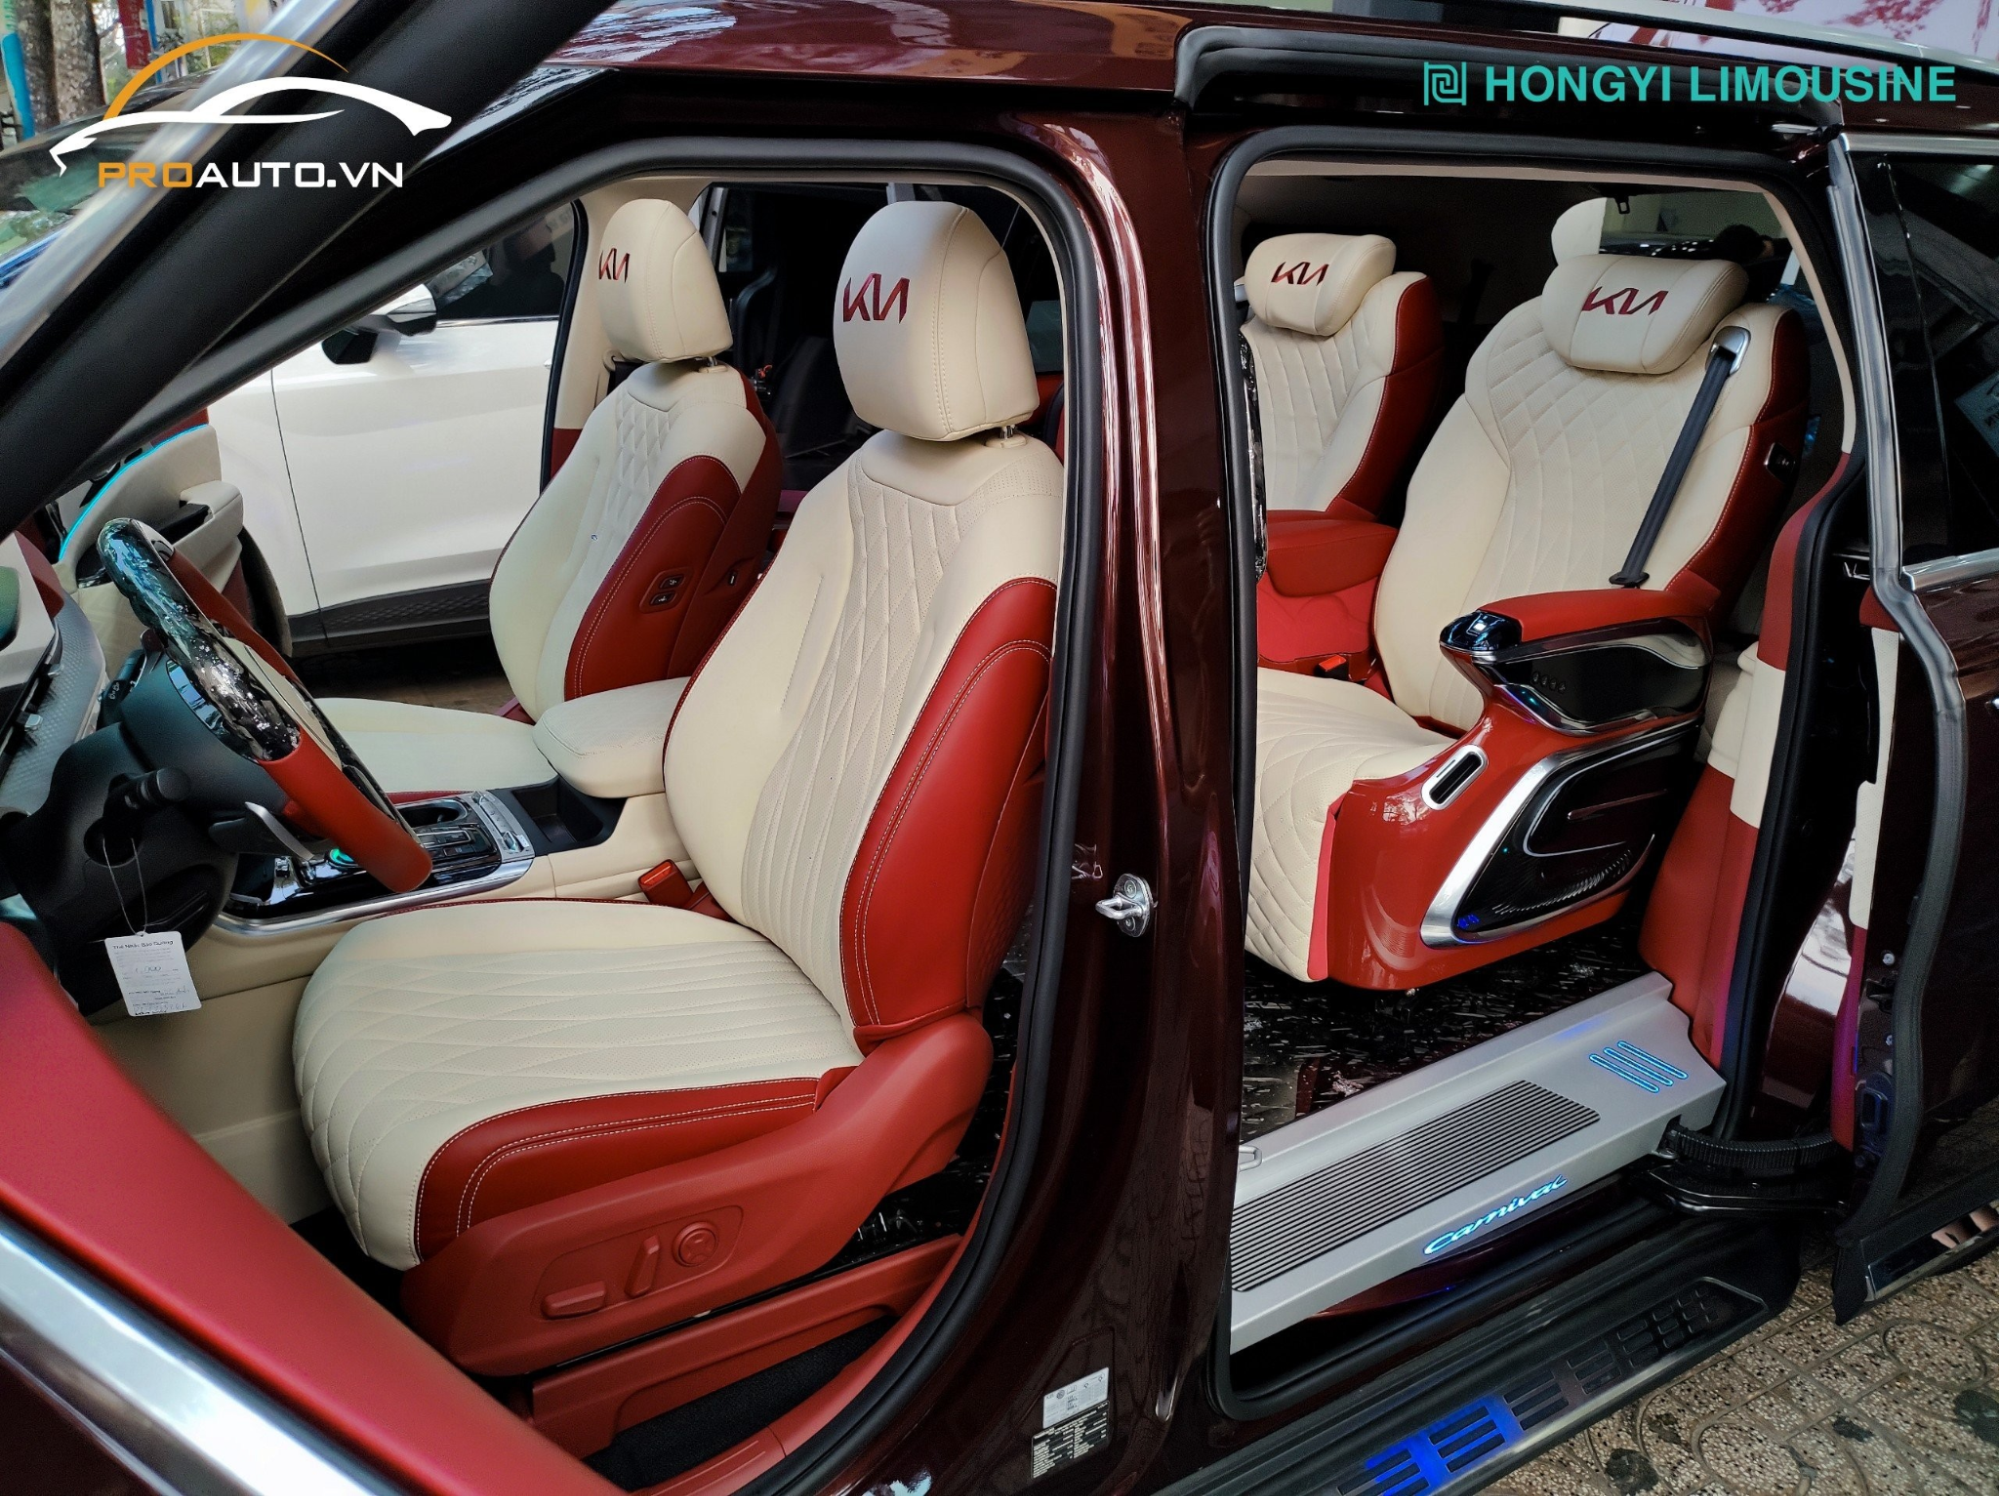 Màu đỏ kem với bộ ghế Hongyi Limousine chính hãng 